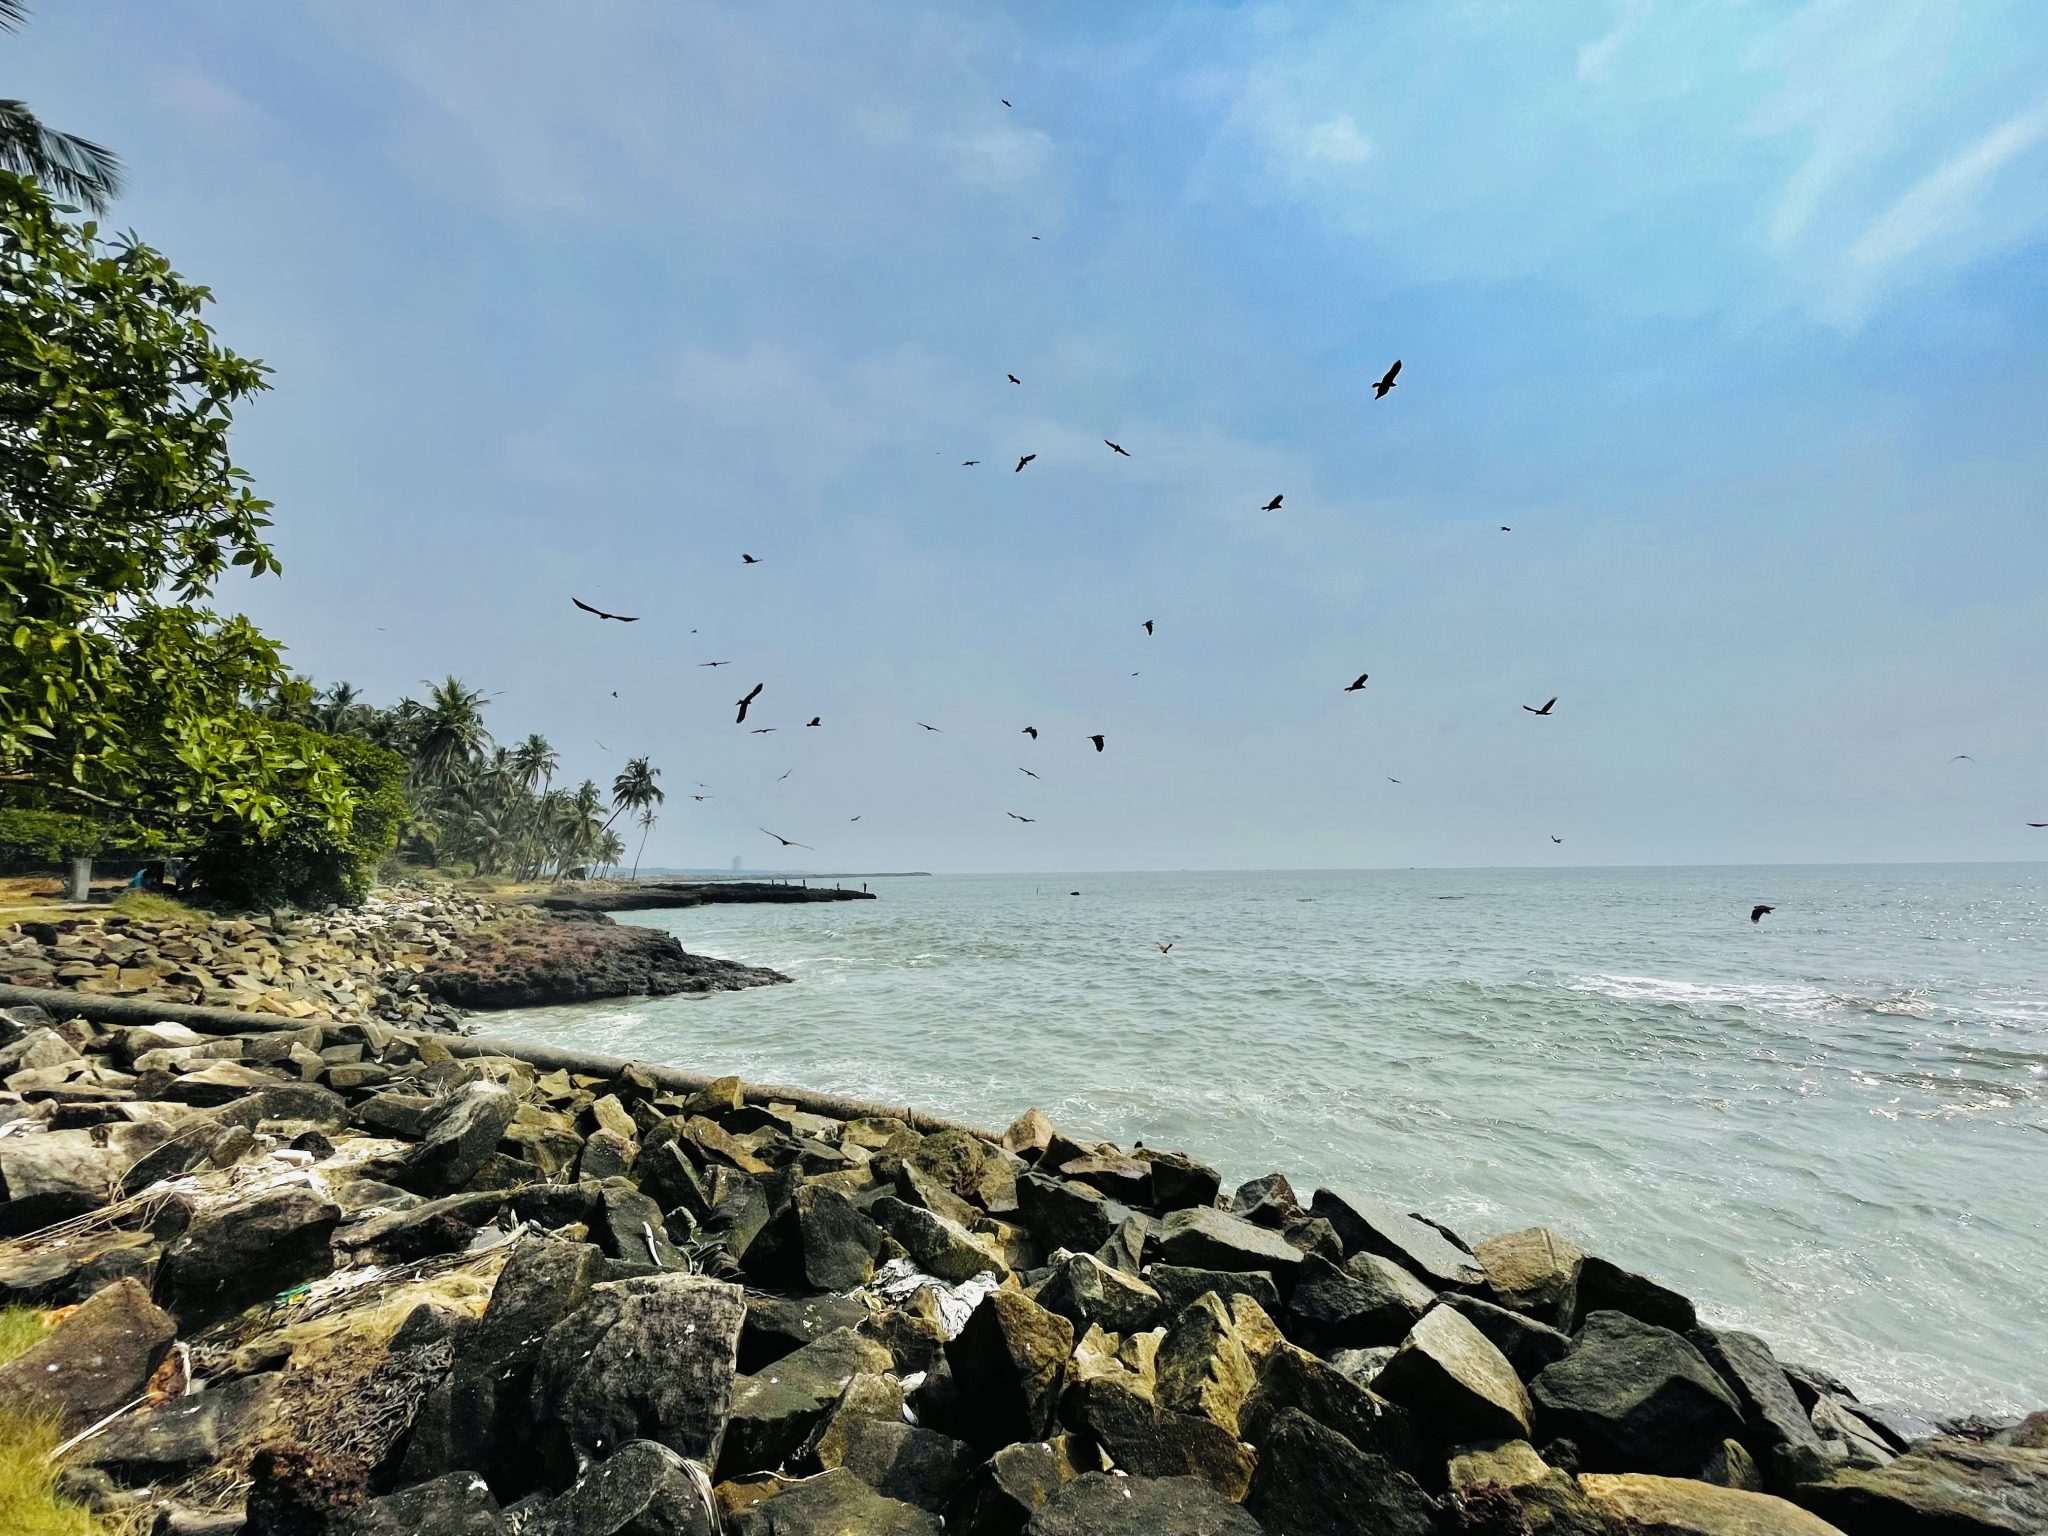 Fish hunting of Eagles. Kozhikode, Kerala, India.